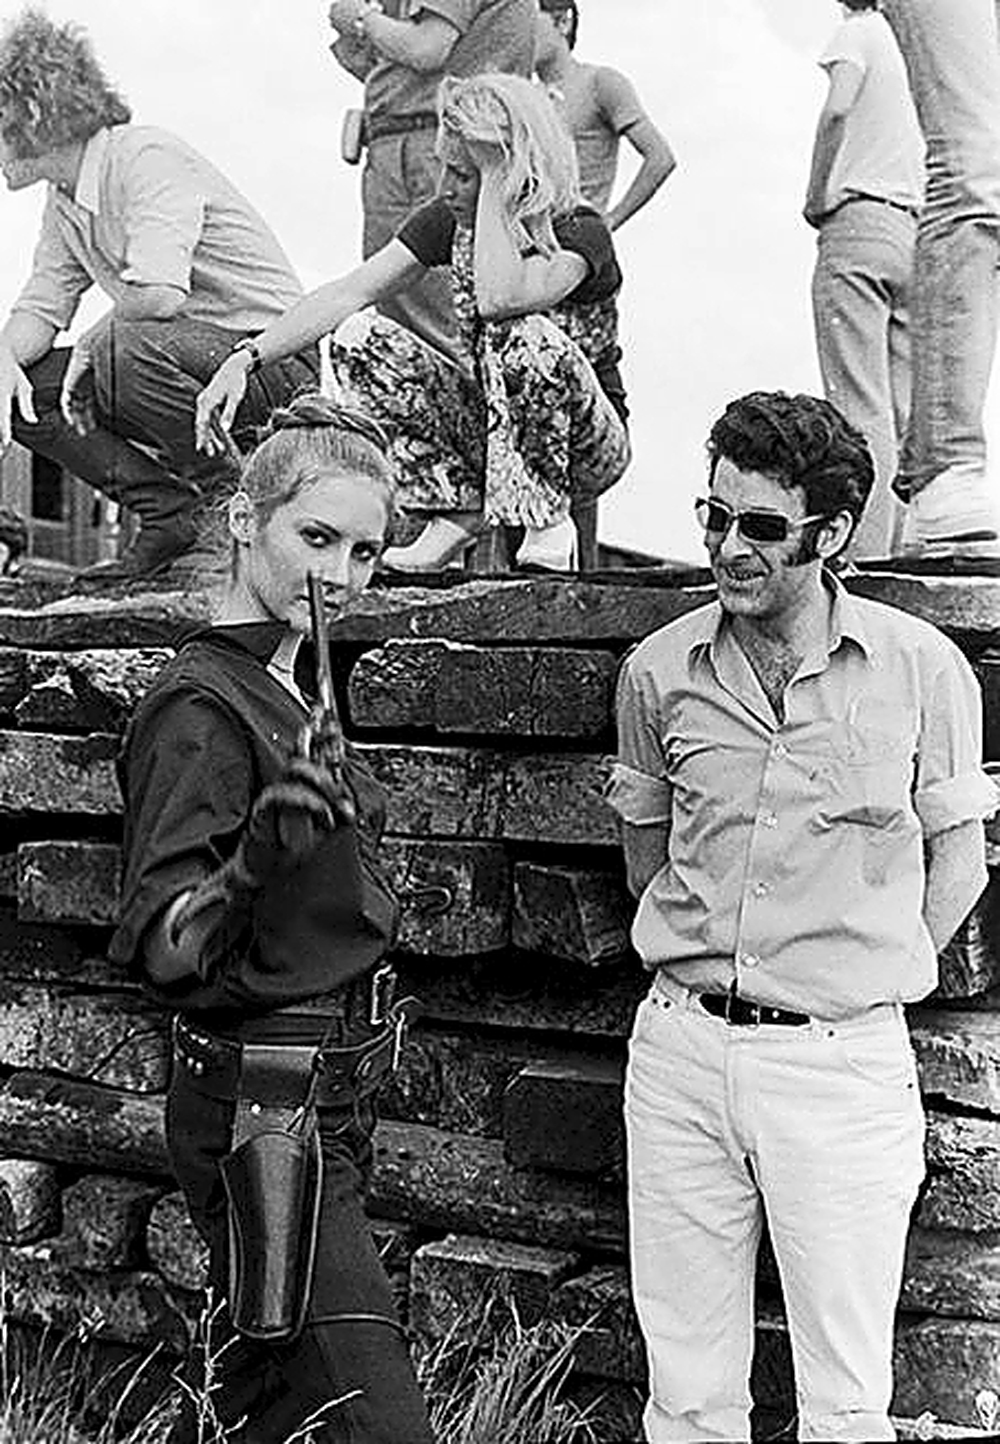 Claudia Cardinale disfrutó de su estancia en Burgos, a diferencia de Bardot, que siempre apareció rodeada de su séquito y no se dejó ver durante el rodaje salvo para lo imprescindible.  / FEDE